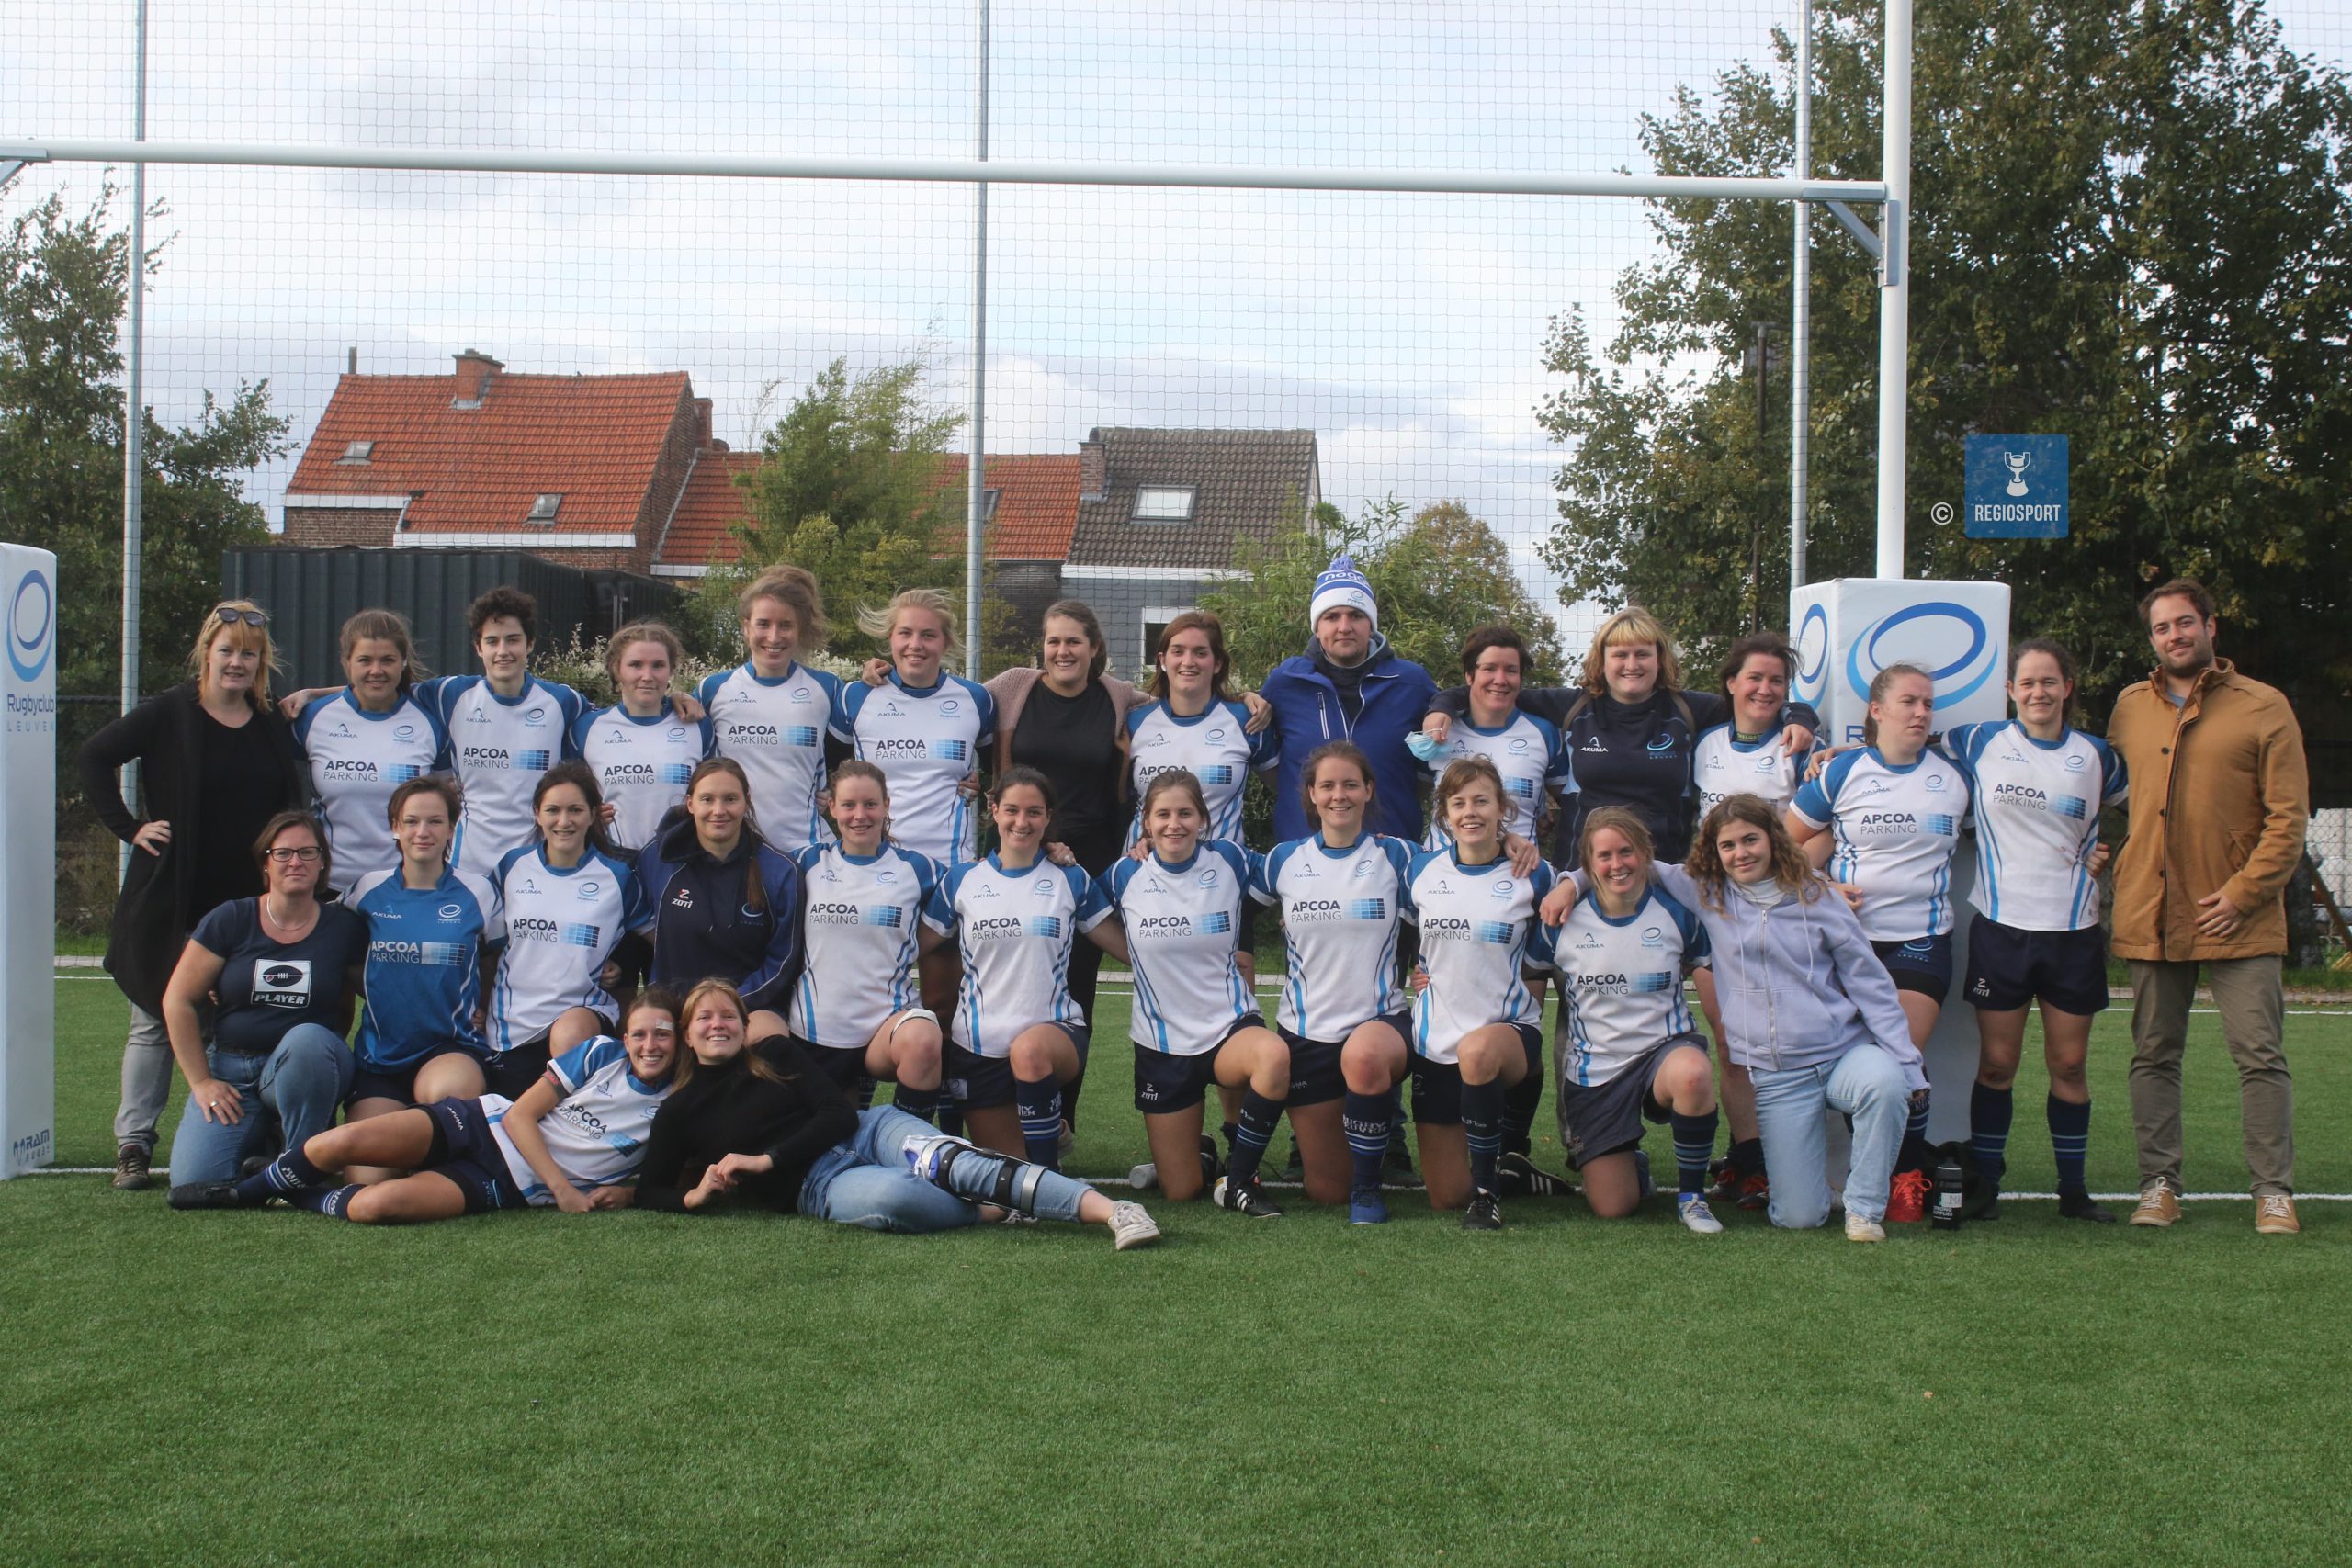 De vrouwen van Rugby Club Leuven